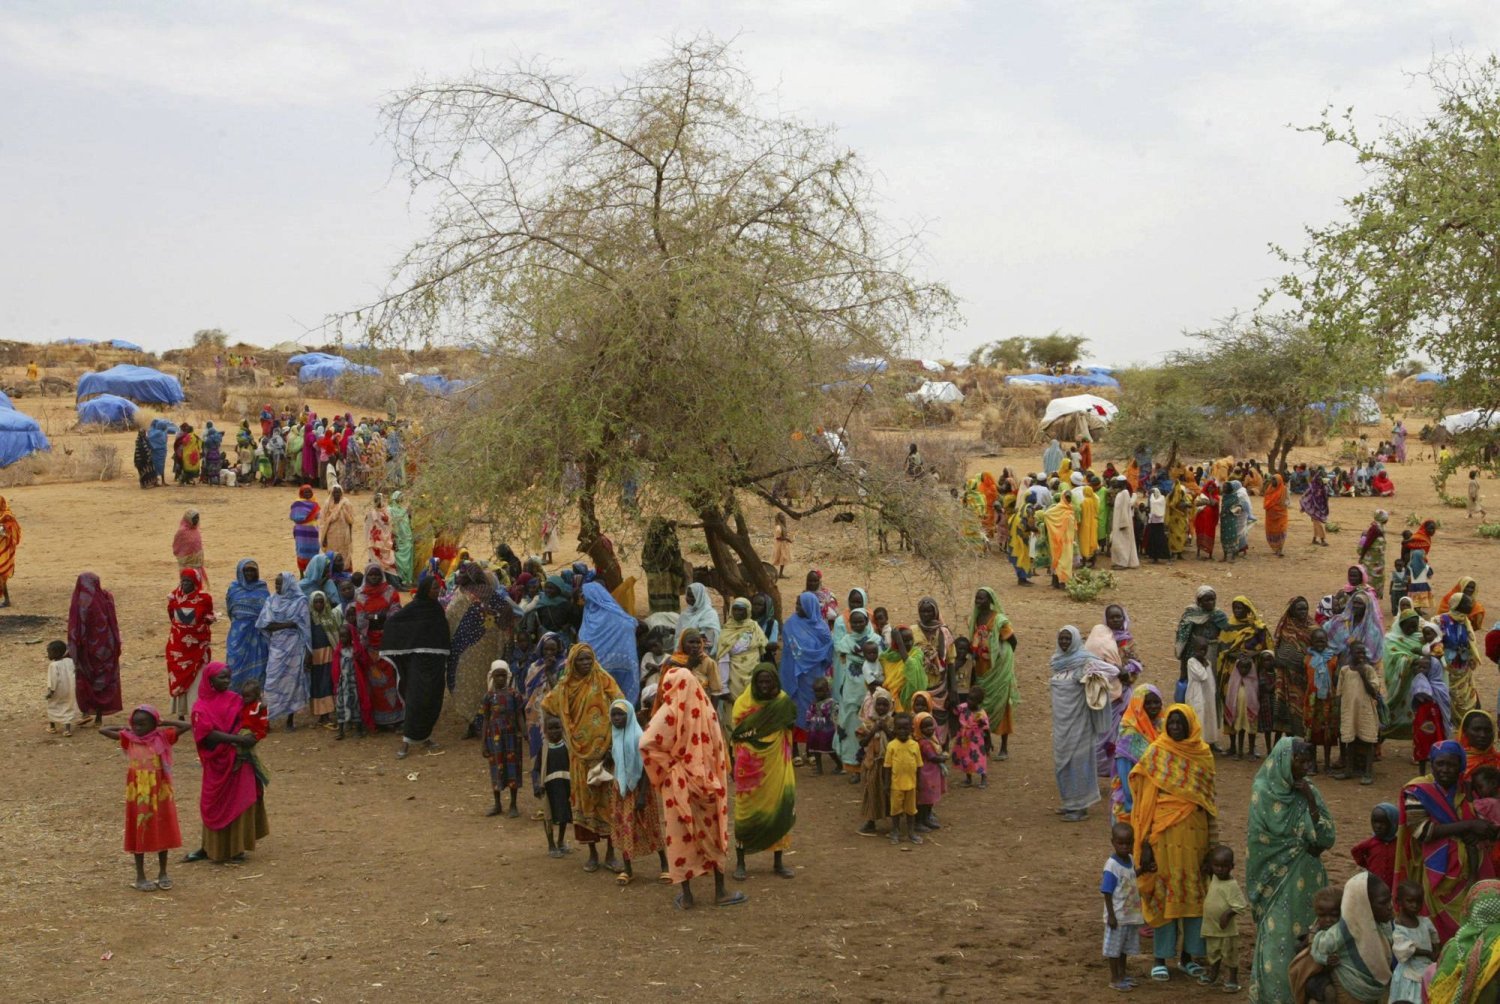 Darfur El Fasher'in dışında Zemzem kampındaki Sudanlı mülteciler  (AP)